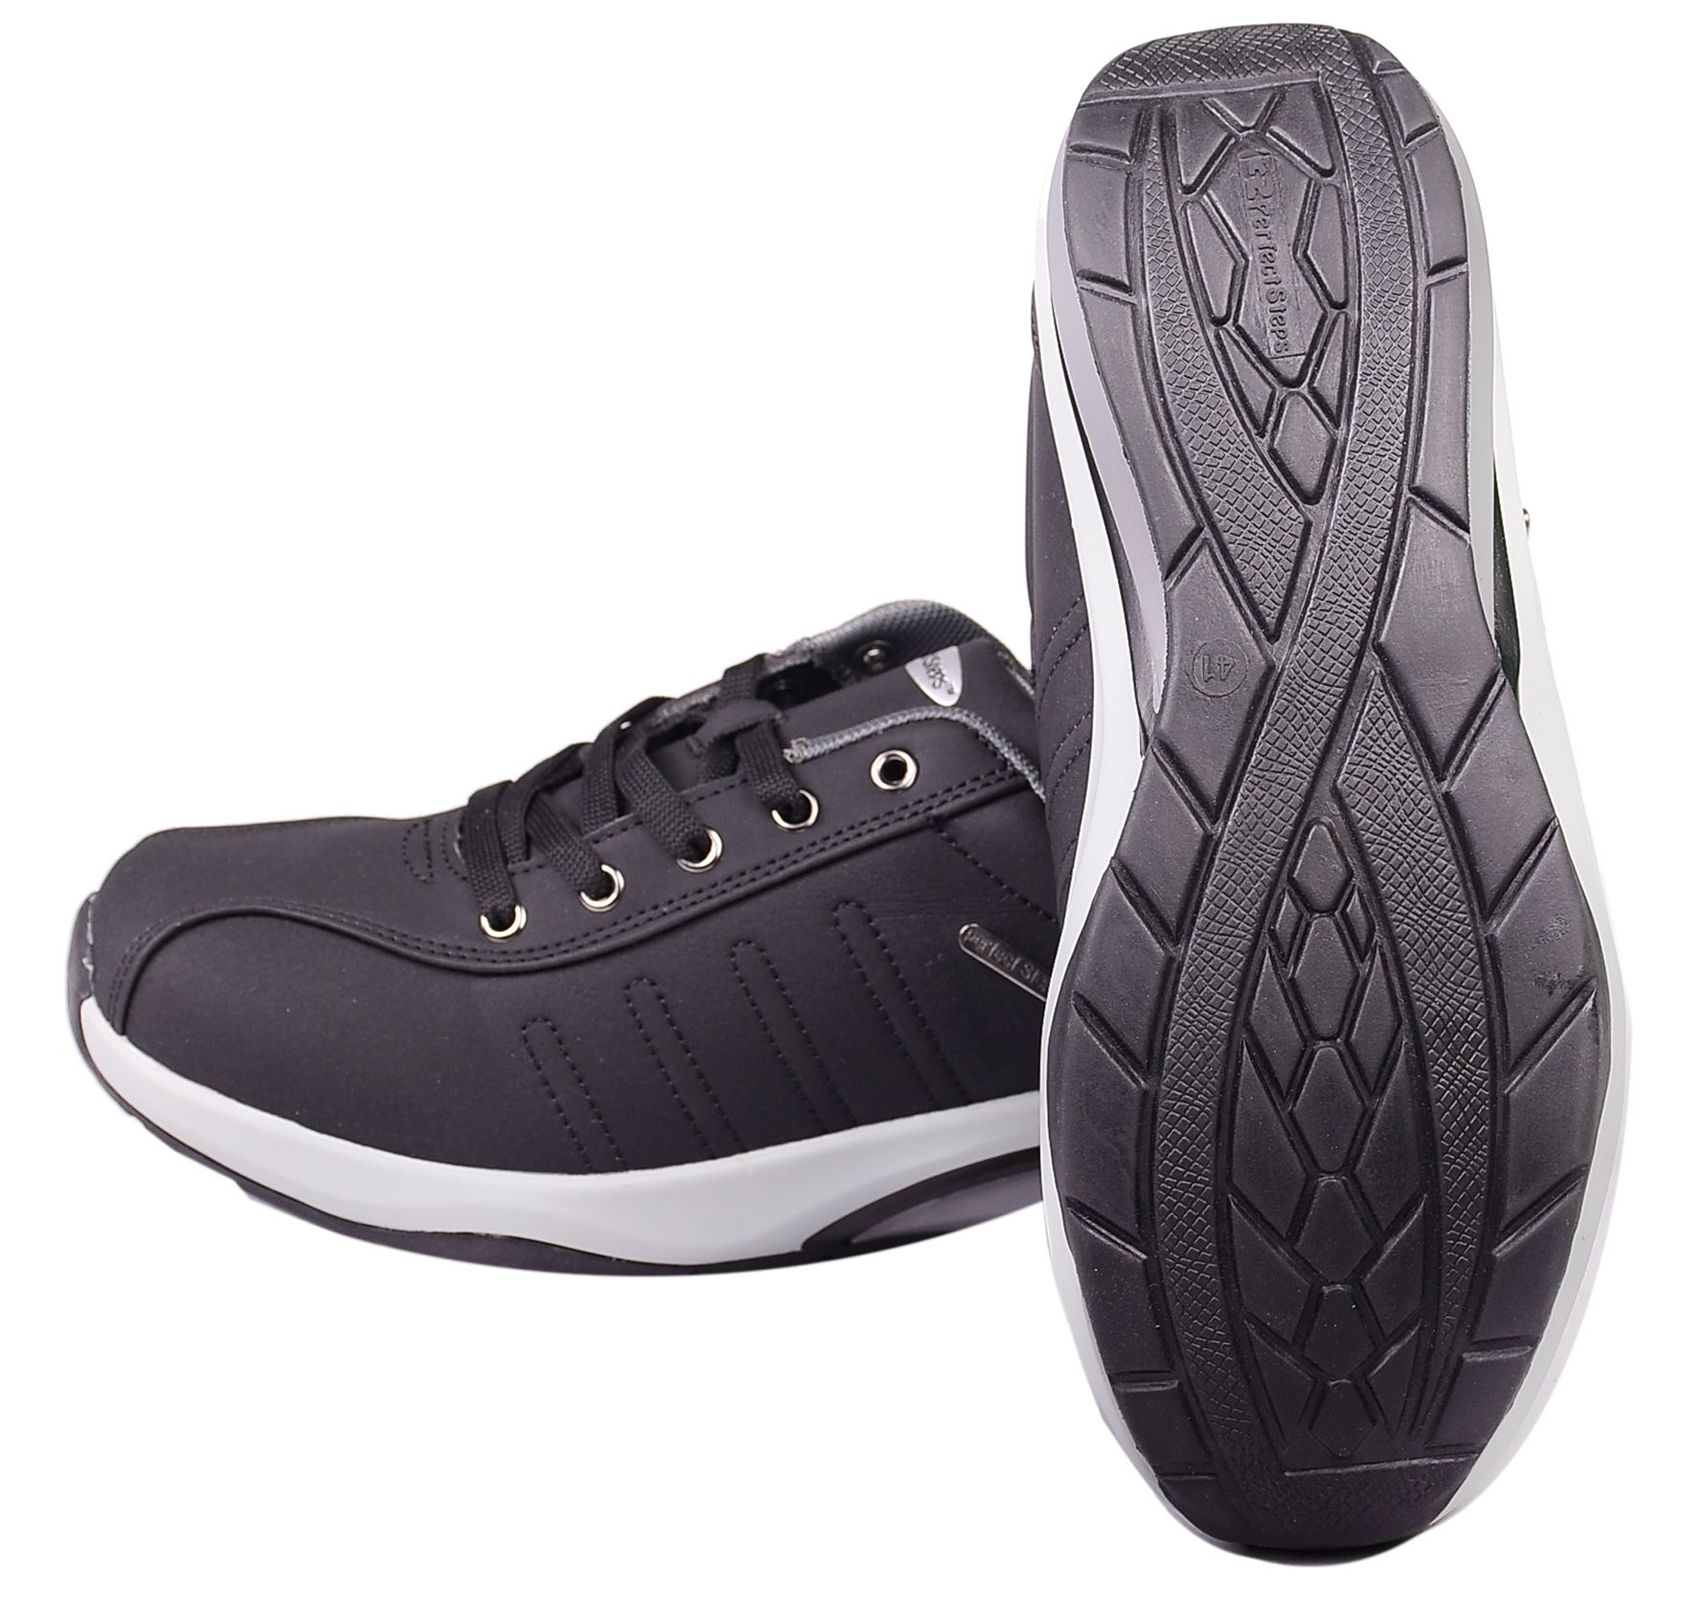 کفش مخصوص پیاده روی مردانه پرفکت استپس مدل پریمو کد 2965 رنگ مشکی